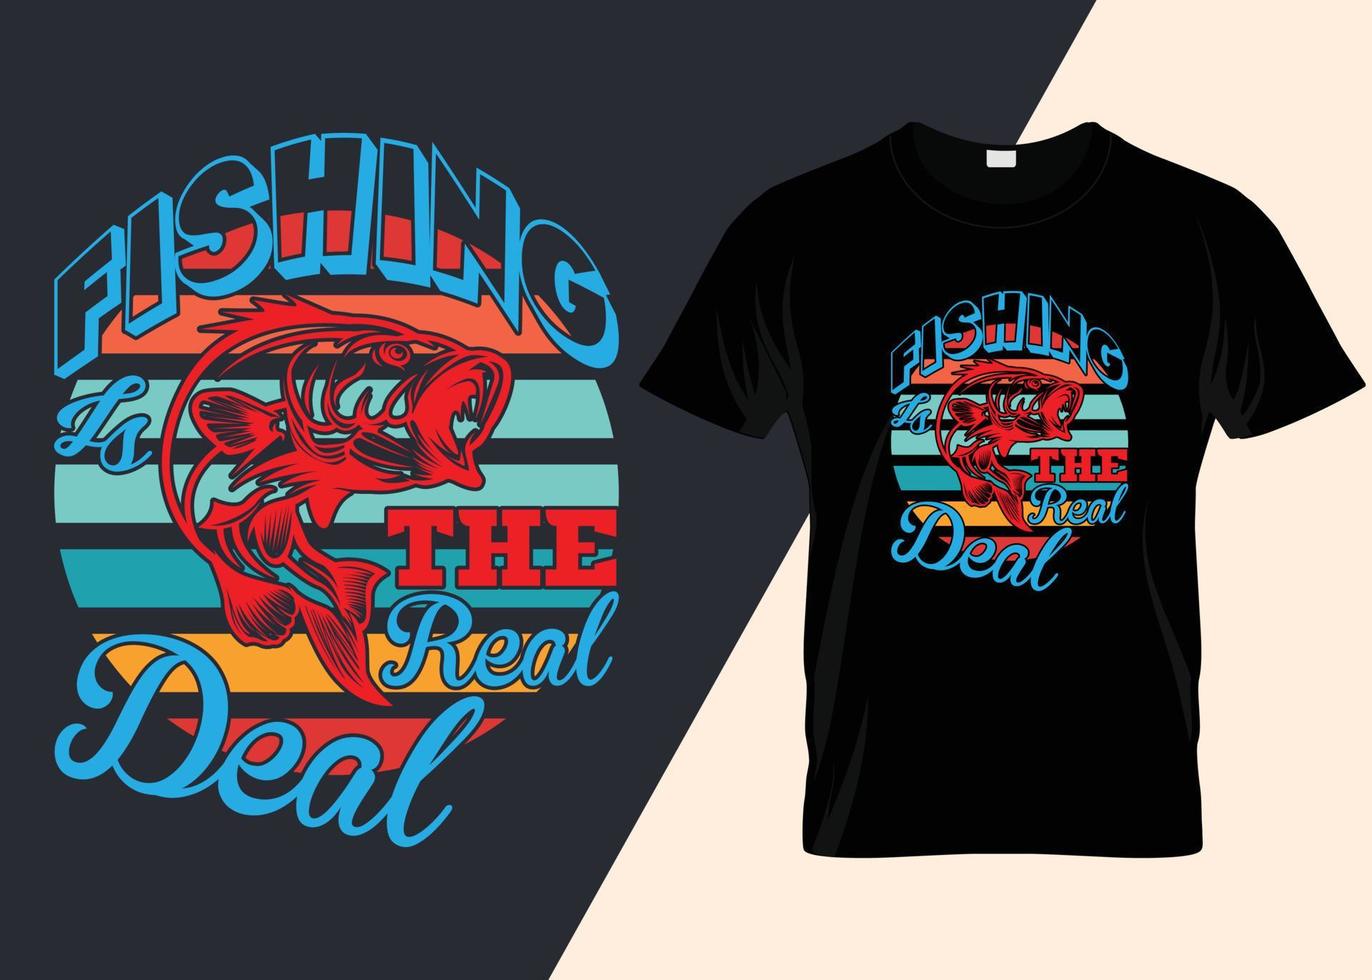 Angeln ist das Spule Deal T-Shirt Design vektor